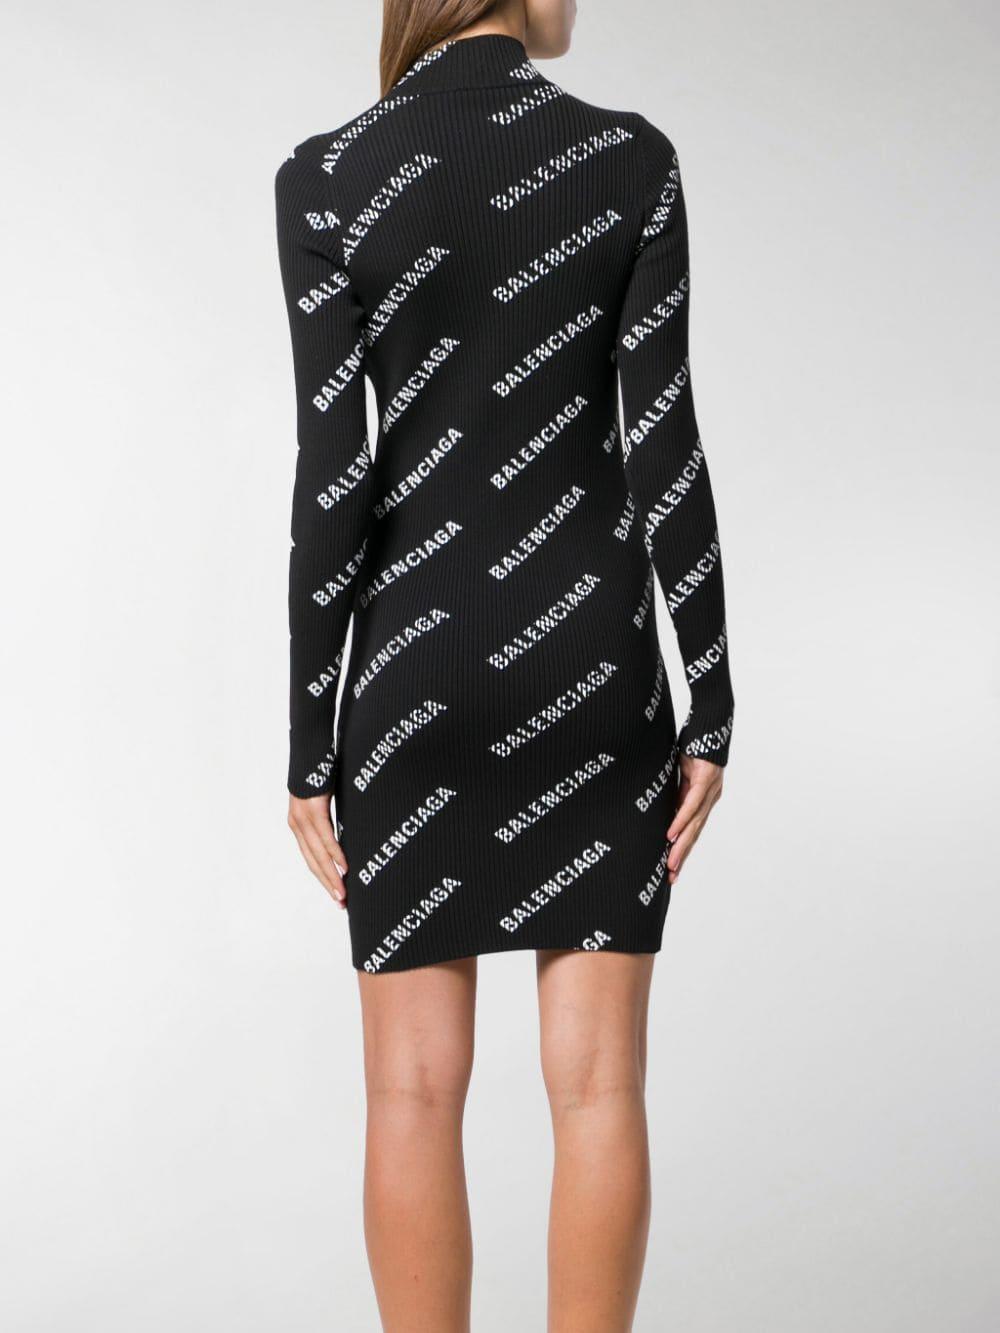 Balenciaga Logo-print Dress in Black - Lyst